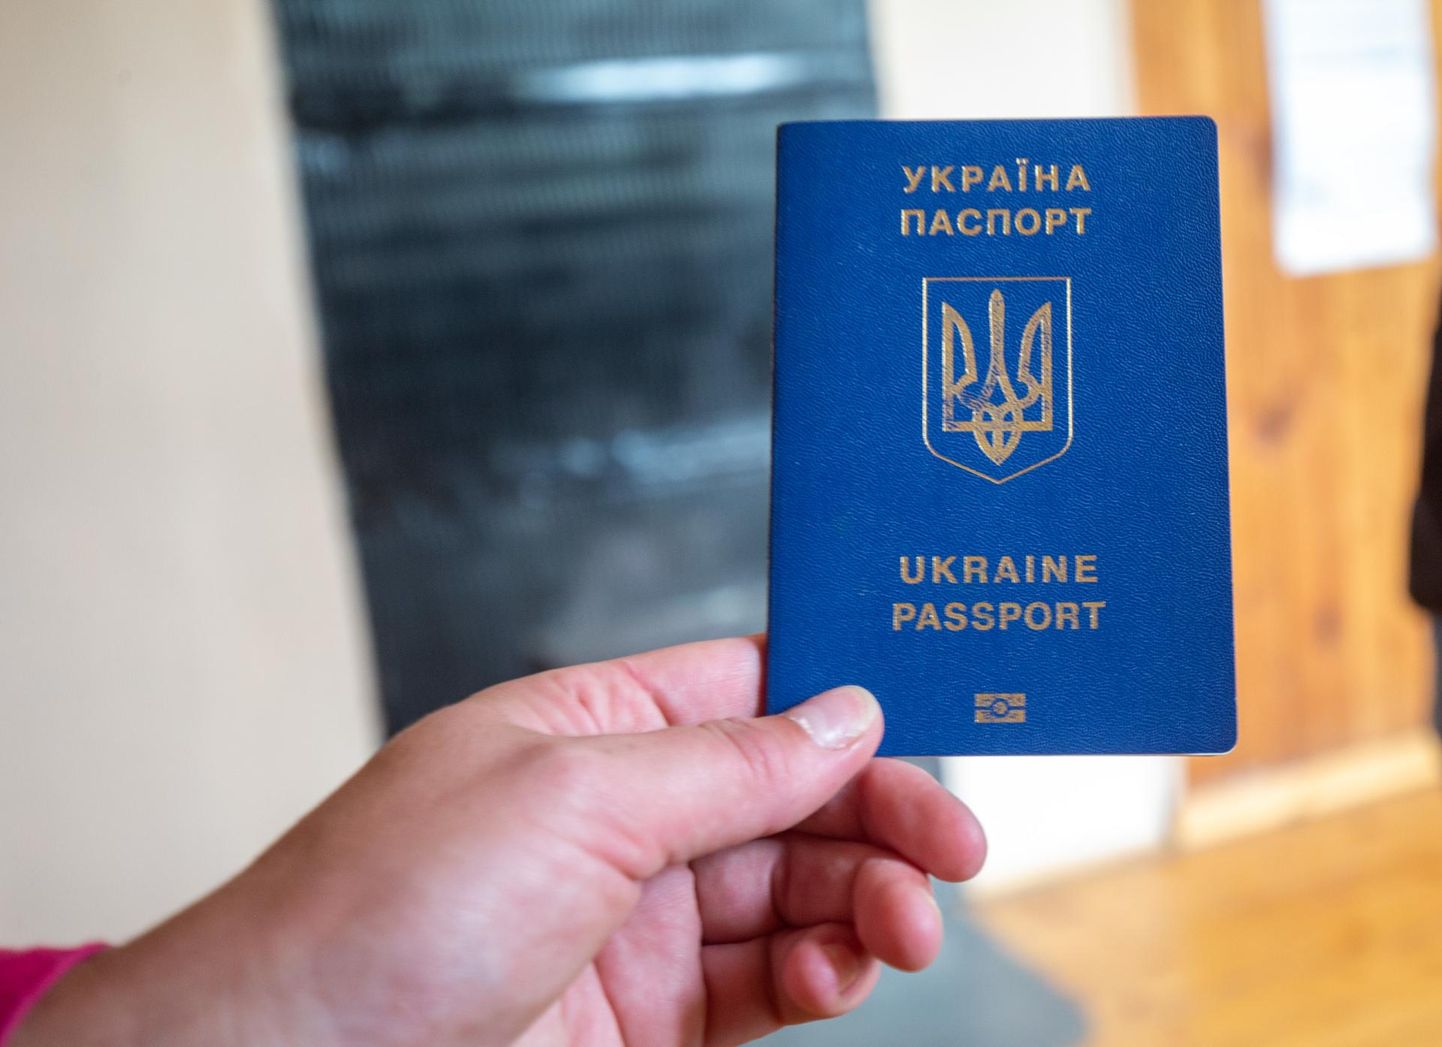 Ukraina pass.